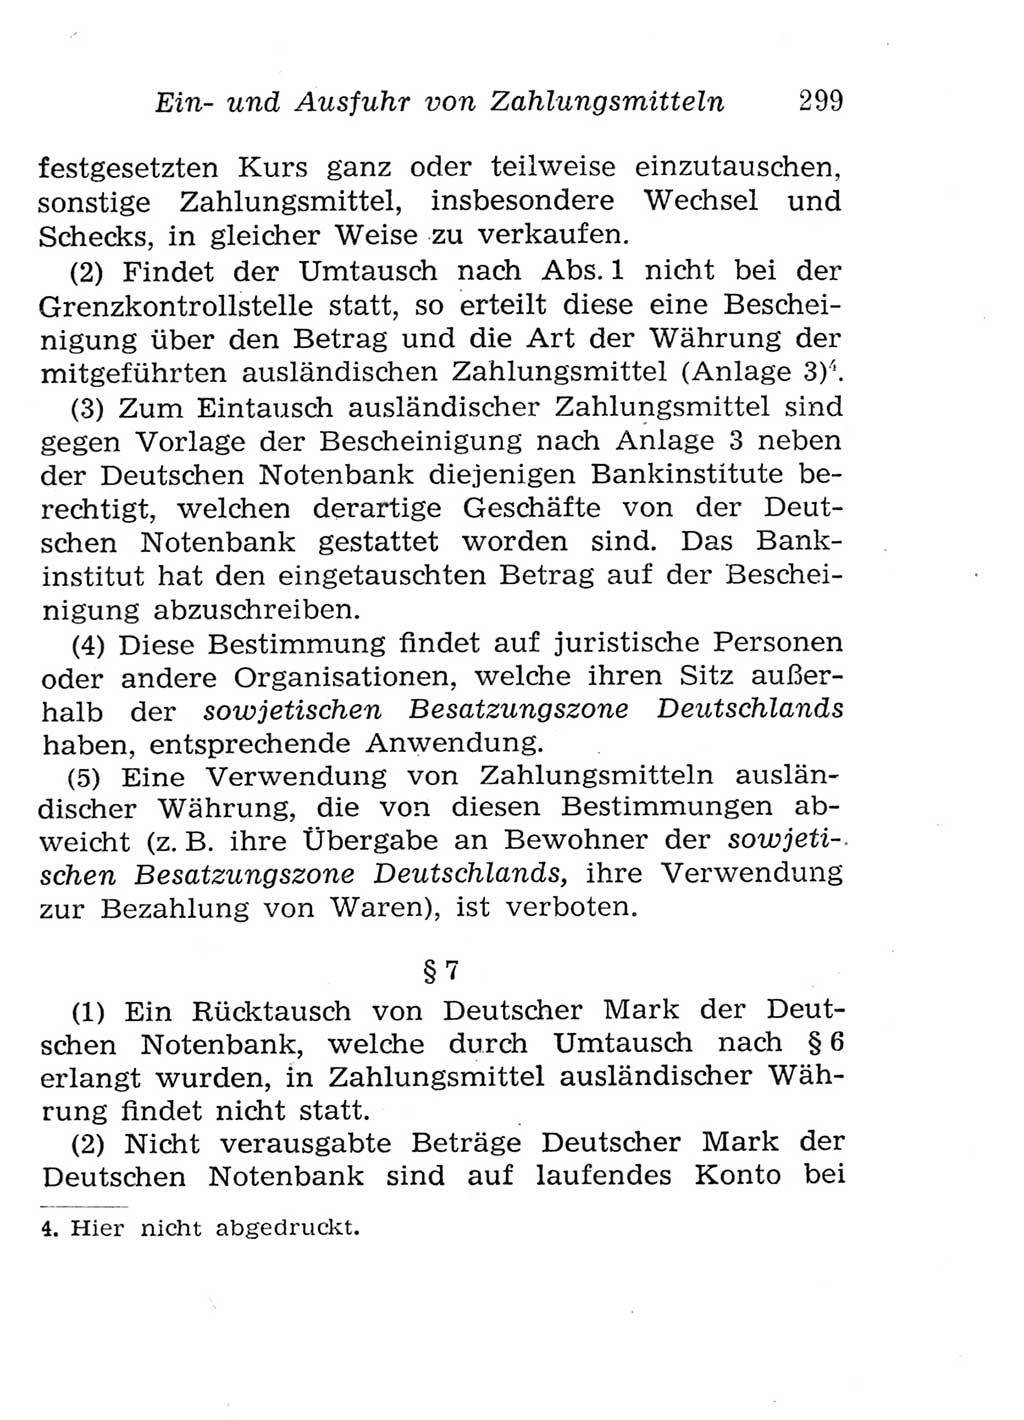 Strafgesetzbuch (StGB) und andere Strafgesetze [Deutsche Demokratische Republik (DDR)] 1957, Seite 299 (StGB Strafges. DDR 1957, S. 299)